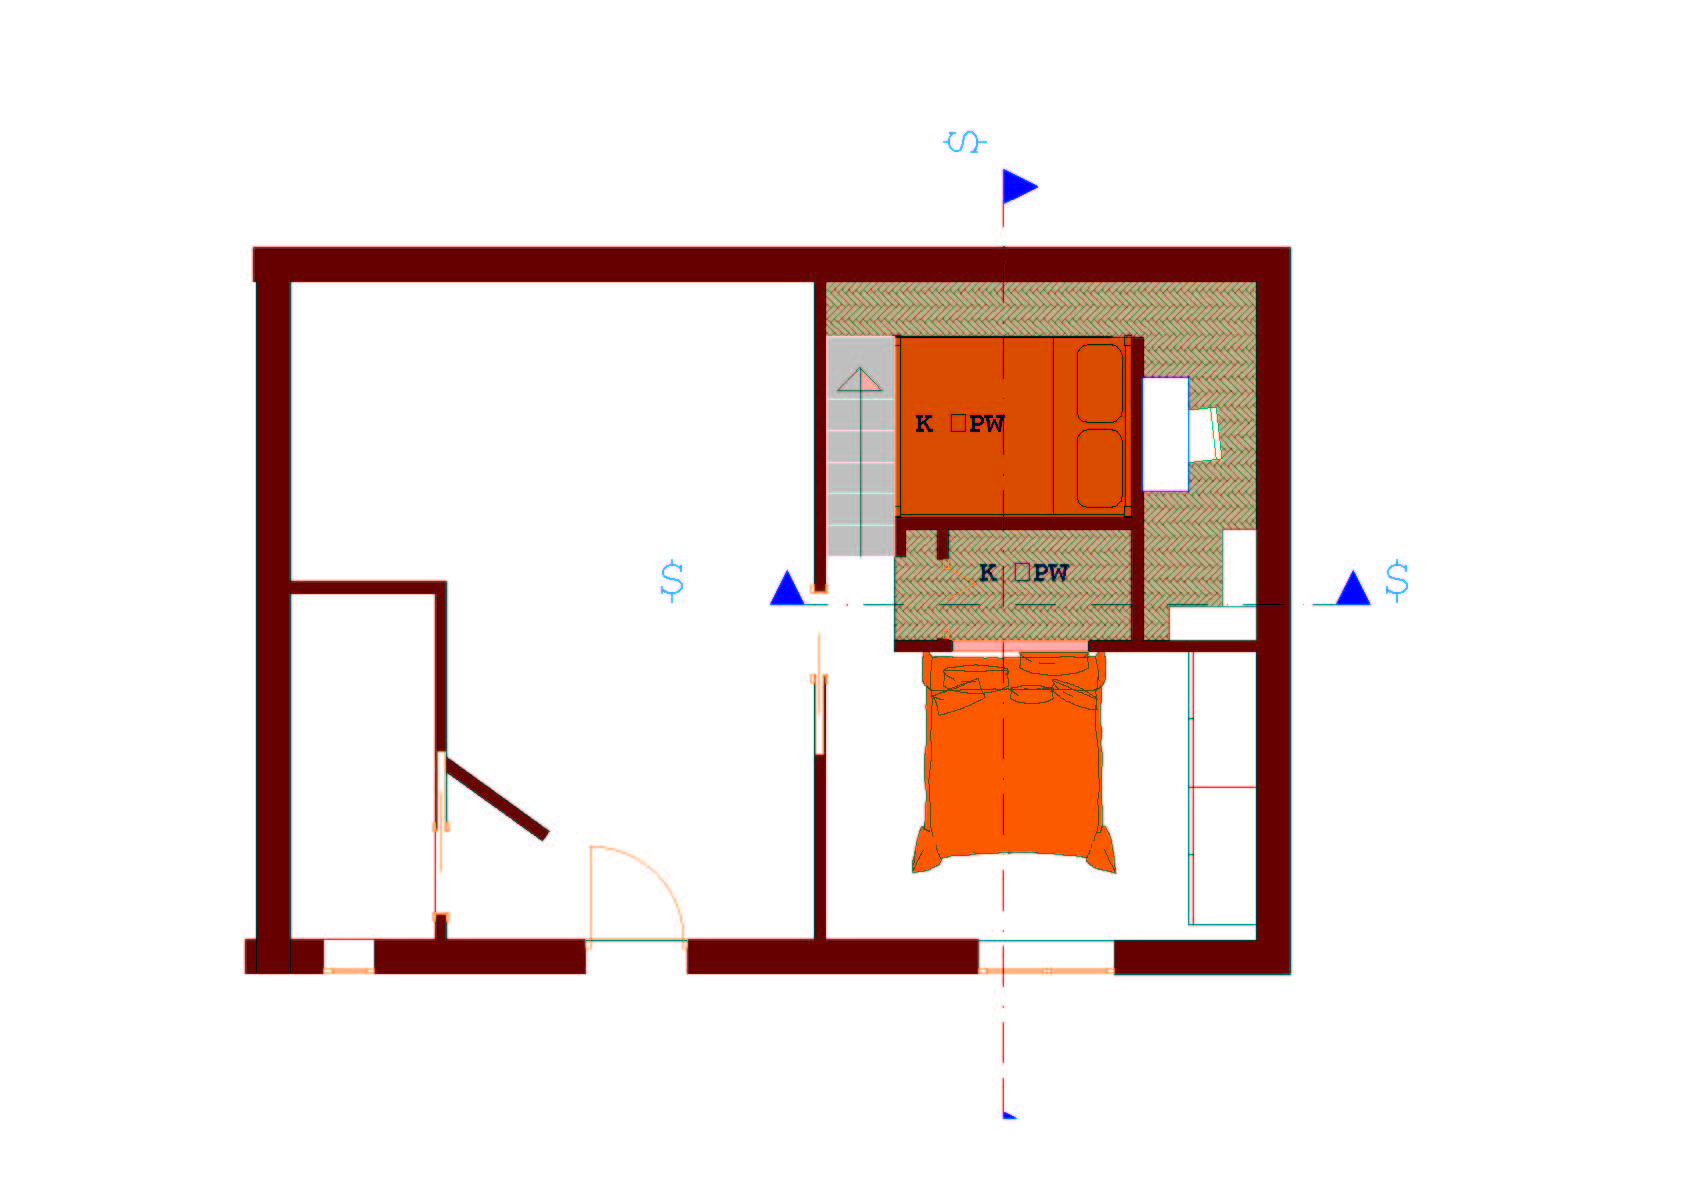 Livello superiore con angolo studio galleria progettionline for Angolo studio in camera da letto